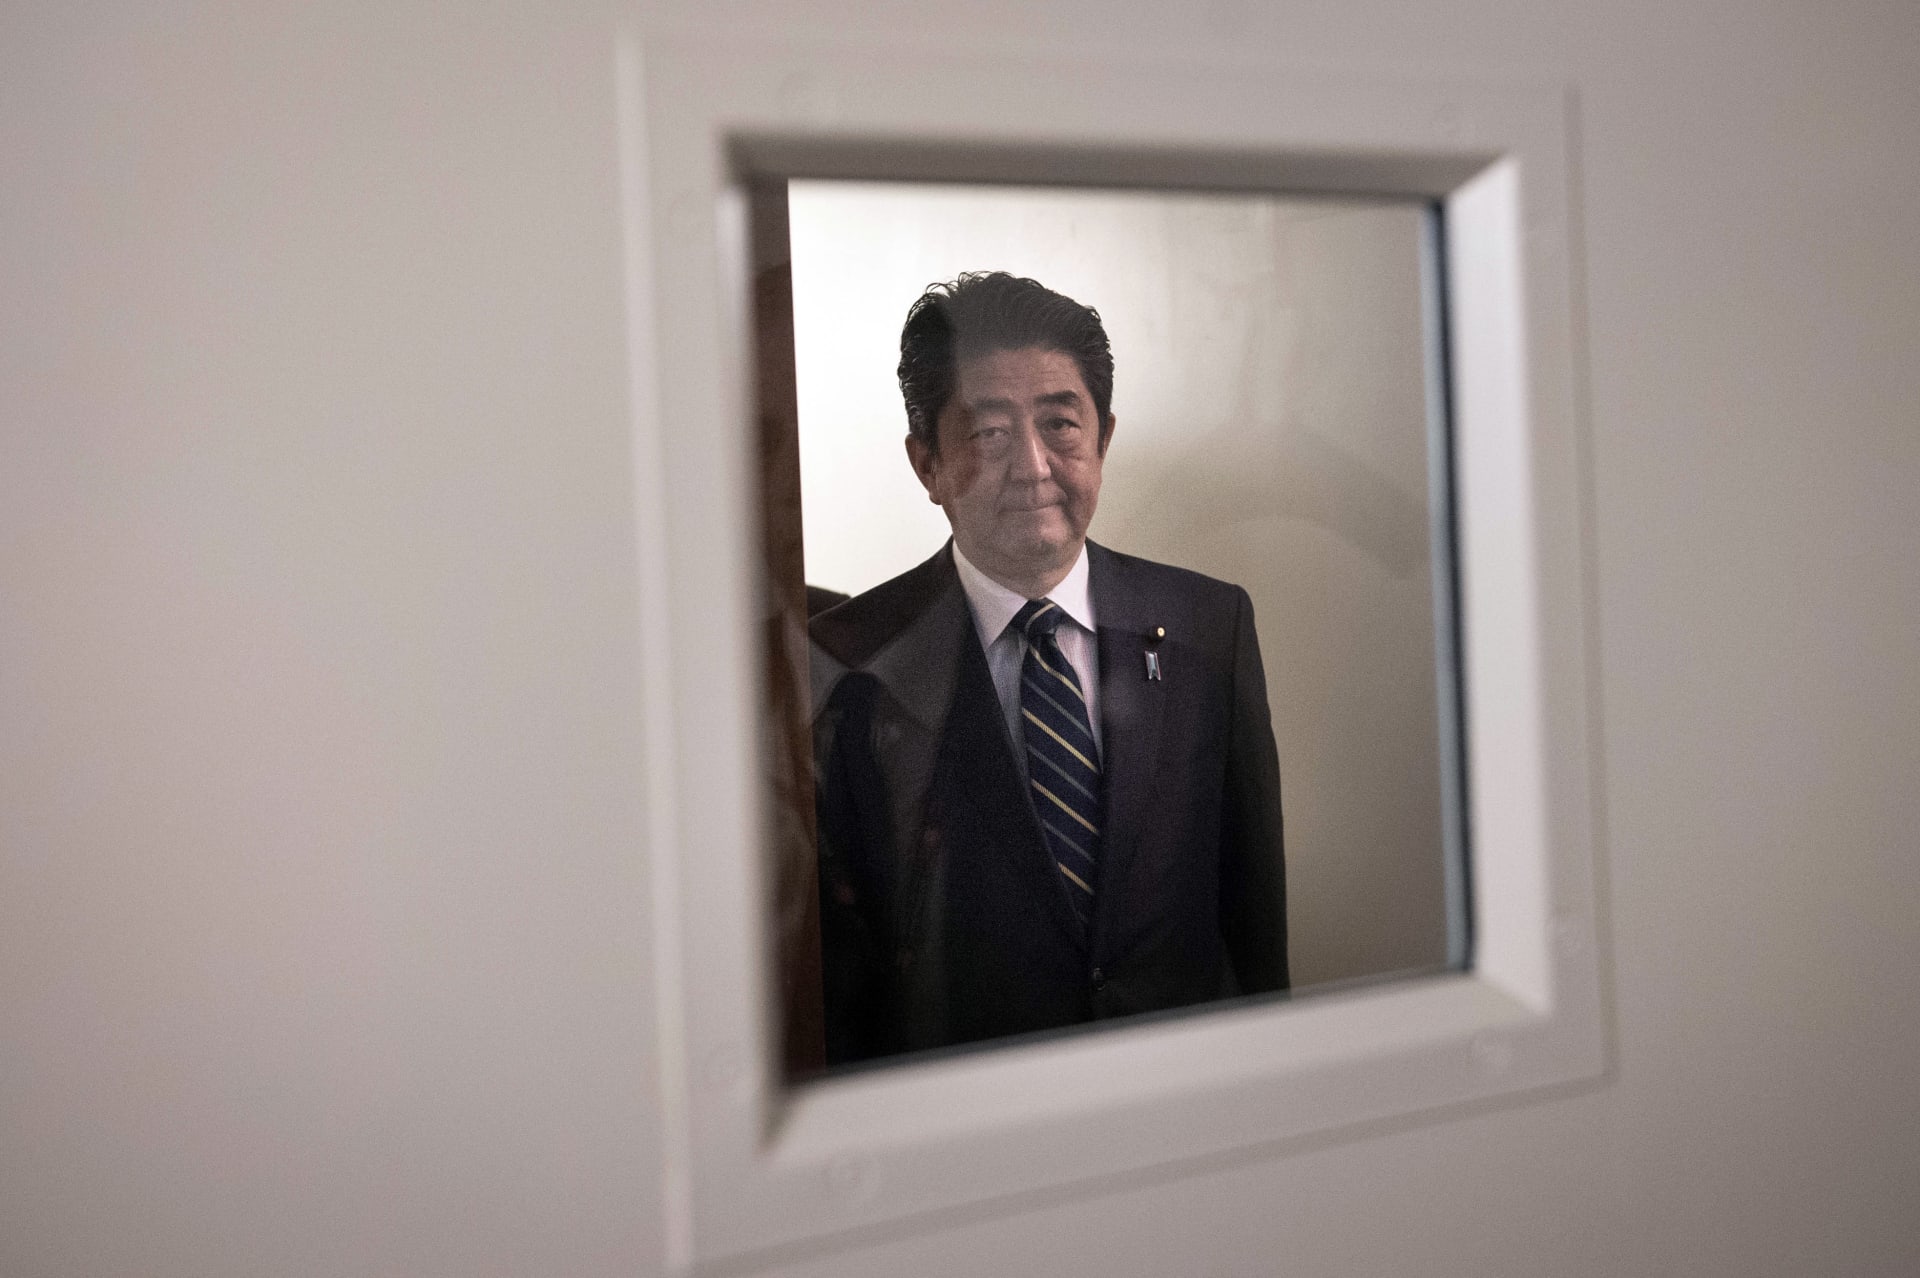 رئيس الوزراء الياباني يقول لبوتين إن استخدام الأسلحة الكيماوية "غير مقبول"